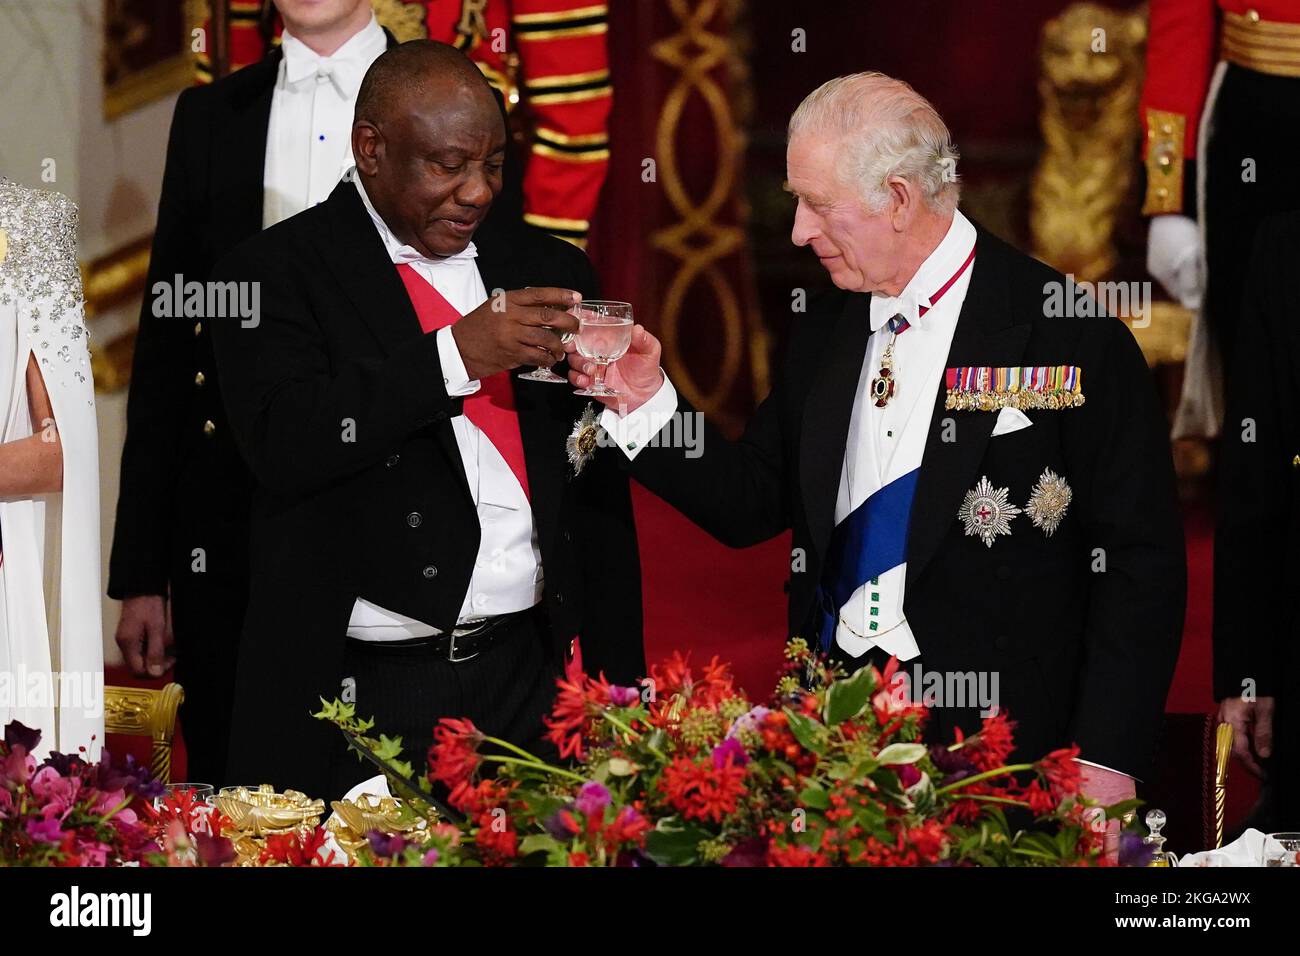 Le Président Cyril Ramaphosa de l'Afrique du Sud et le Roi Charles III ont donné des toast au banquet d'État tenu à Buckingham Palace, Londres, lors de la visite d'État au Royaume-Uni par le Président sud-africain. Date de la photo: Mardi 22 novembre 2022. Banque D'Images